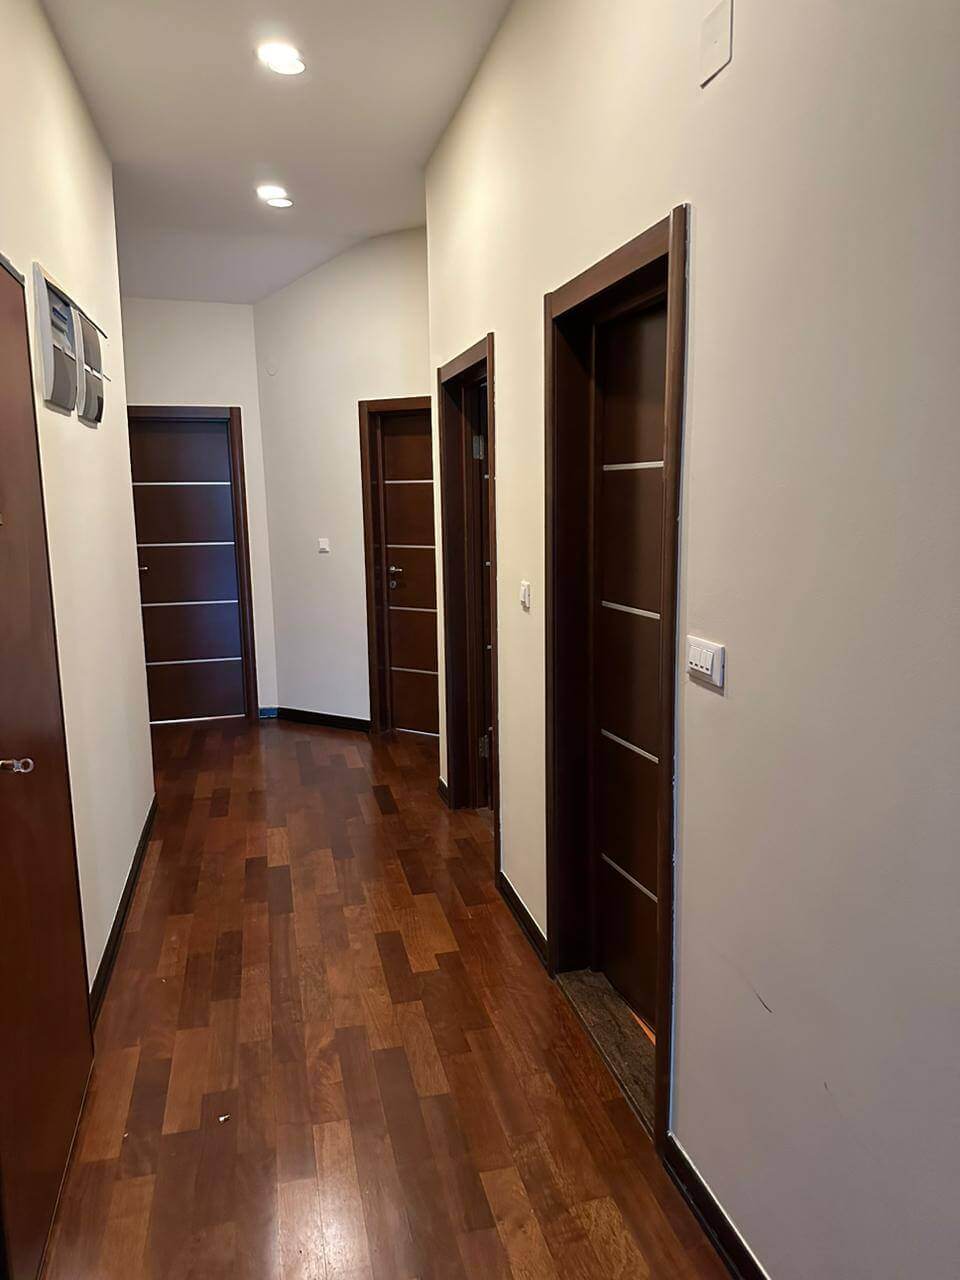 Купить 3-х комнатную квартиру в Будве: коридор со входами в спальные комнаты